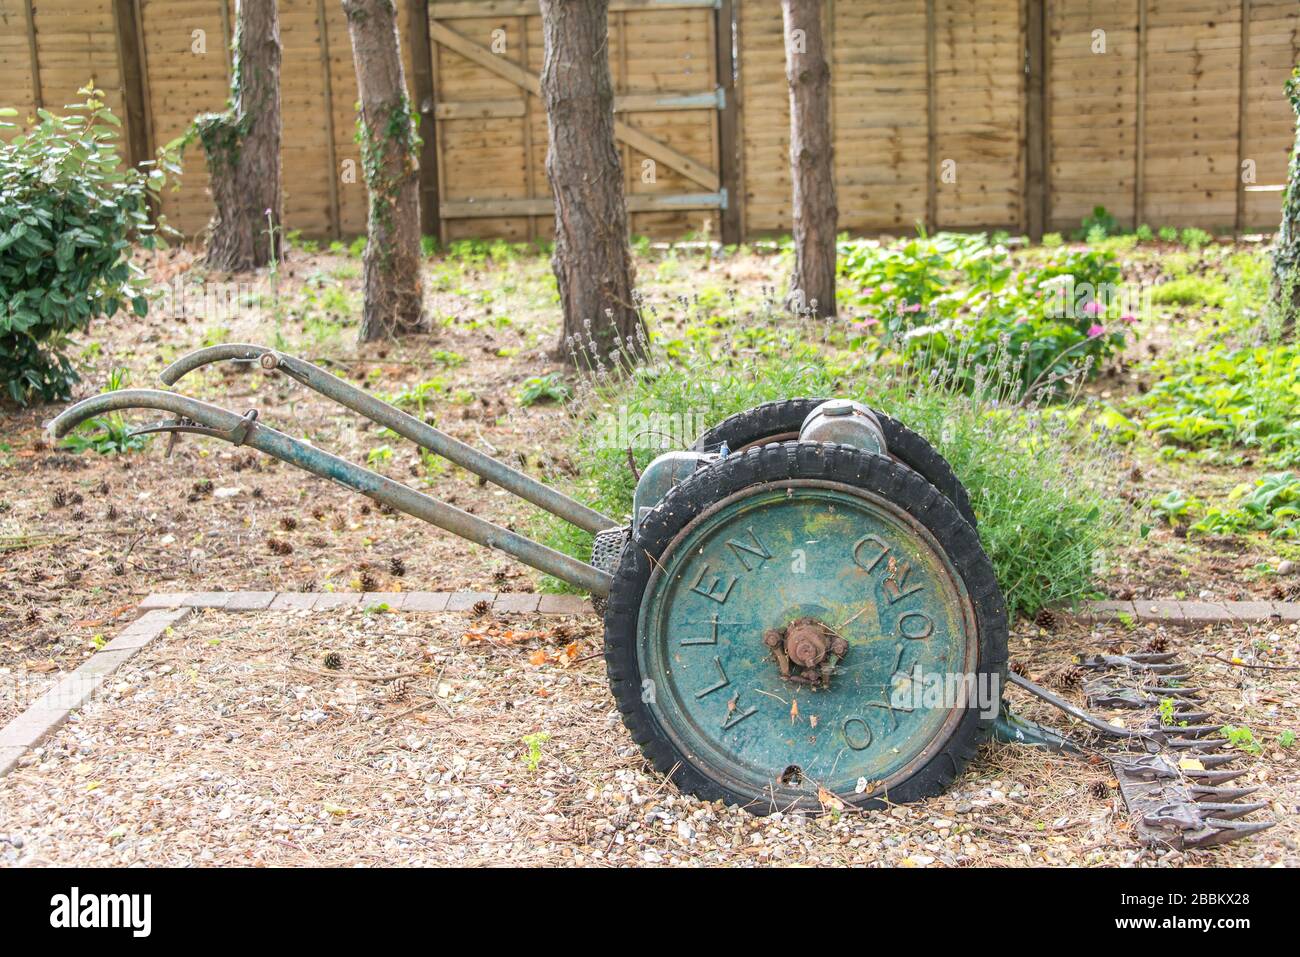 English country garden, vintage garden mower. England, UK Stock Photo